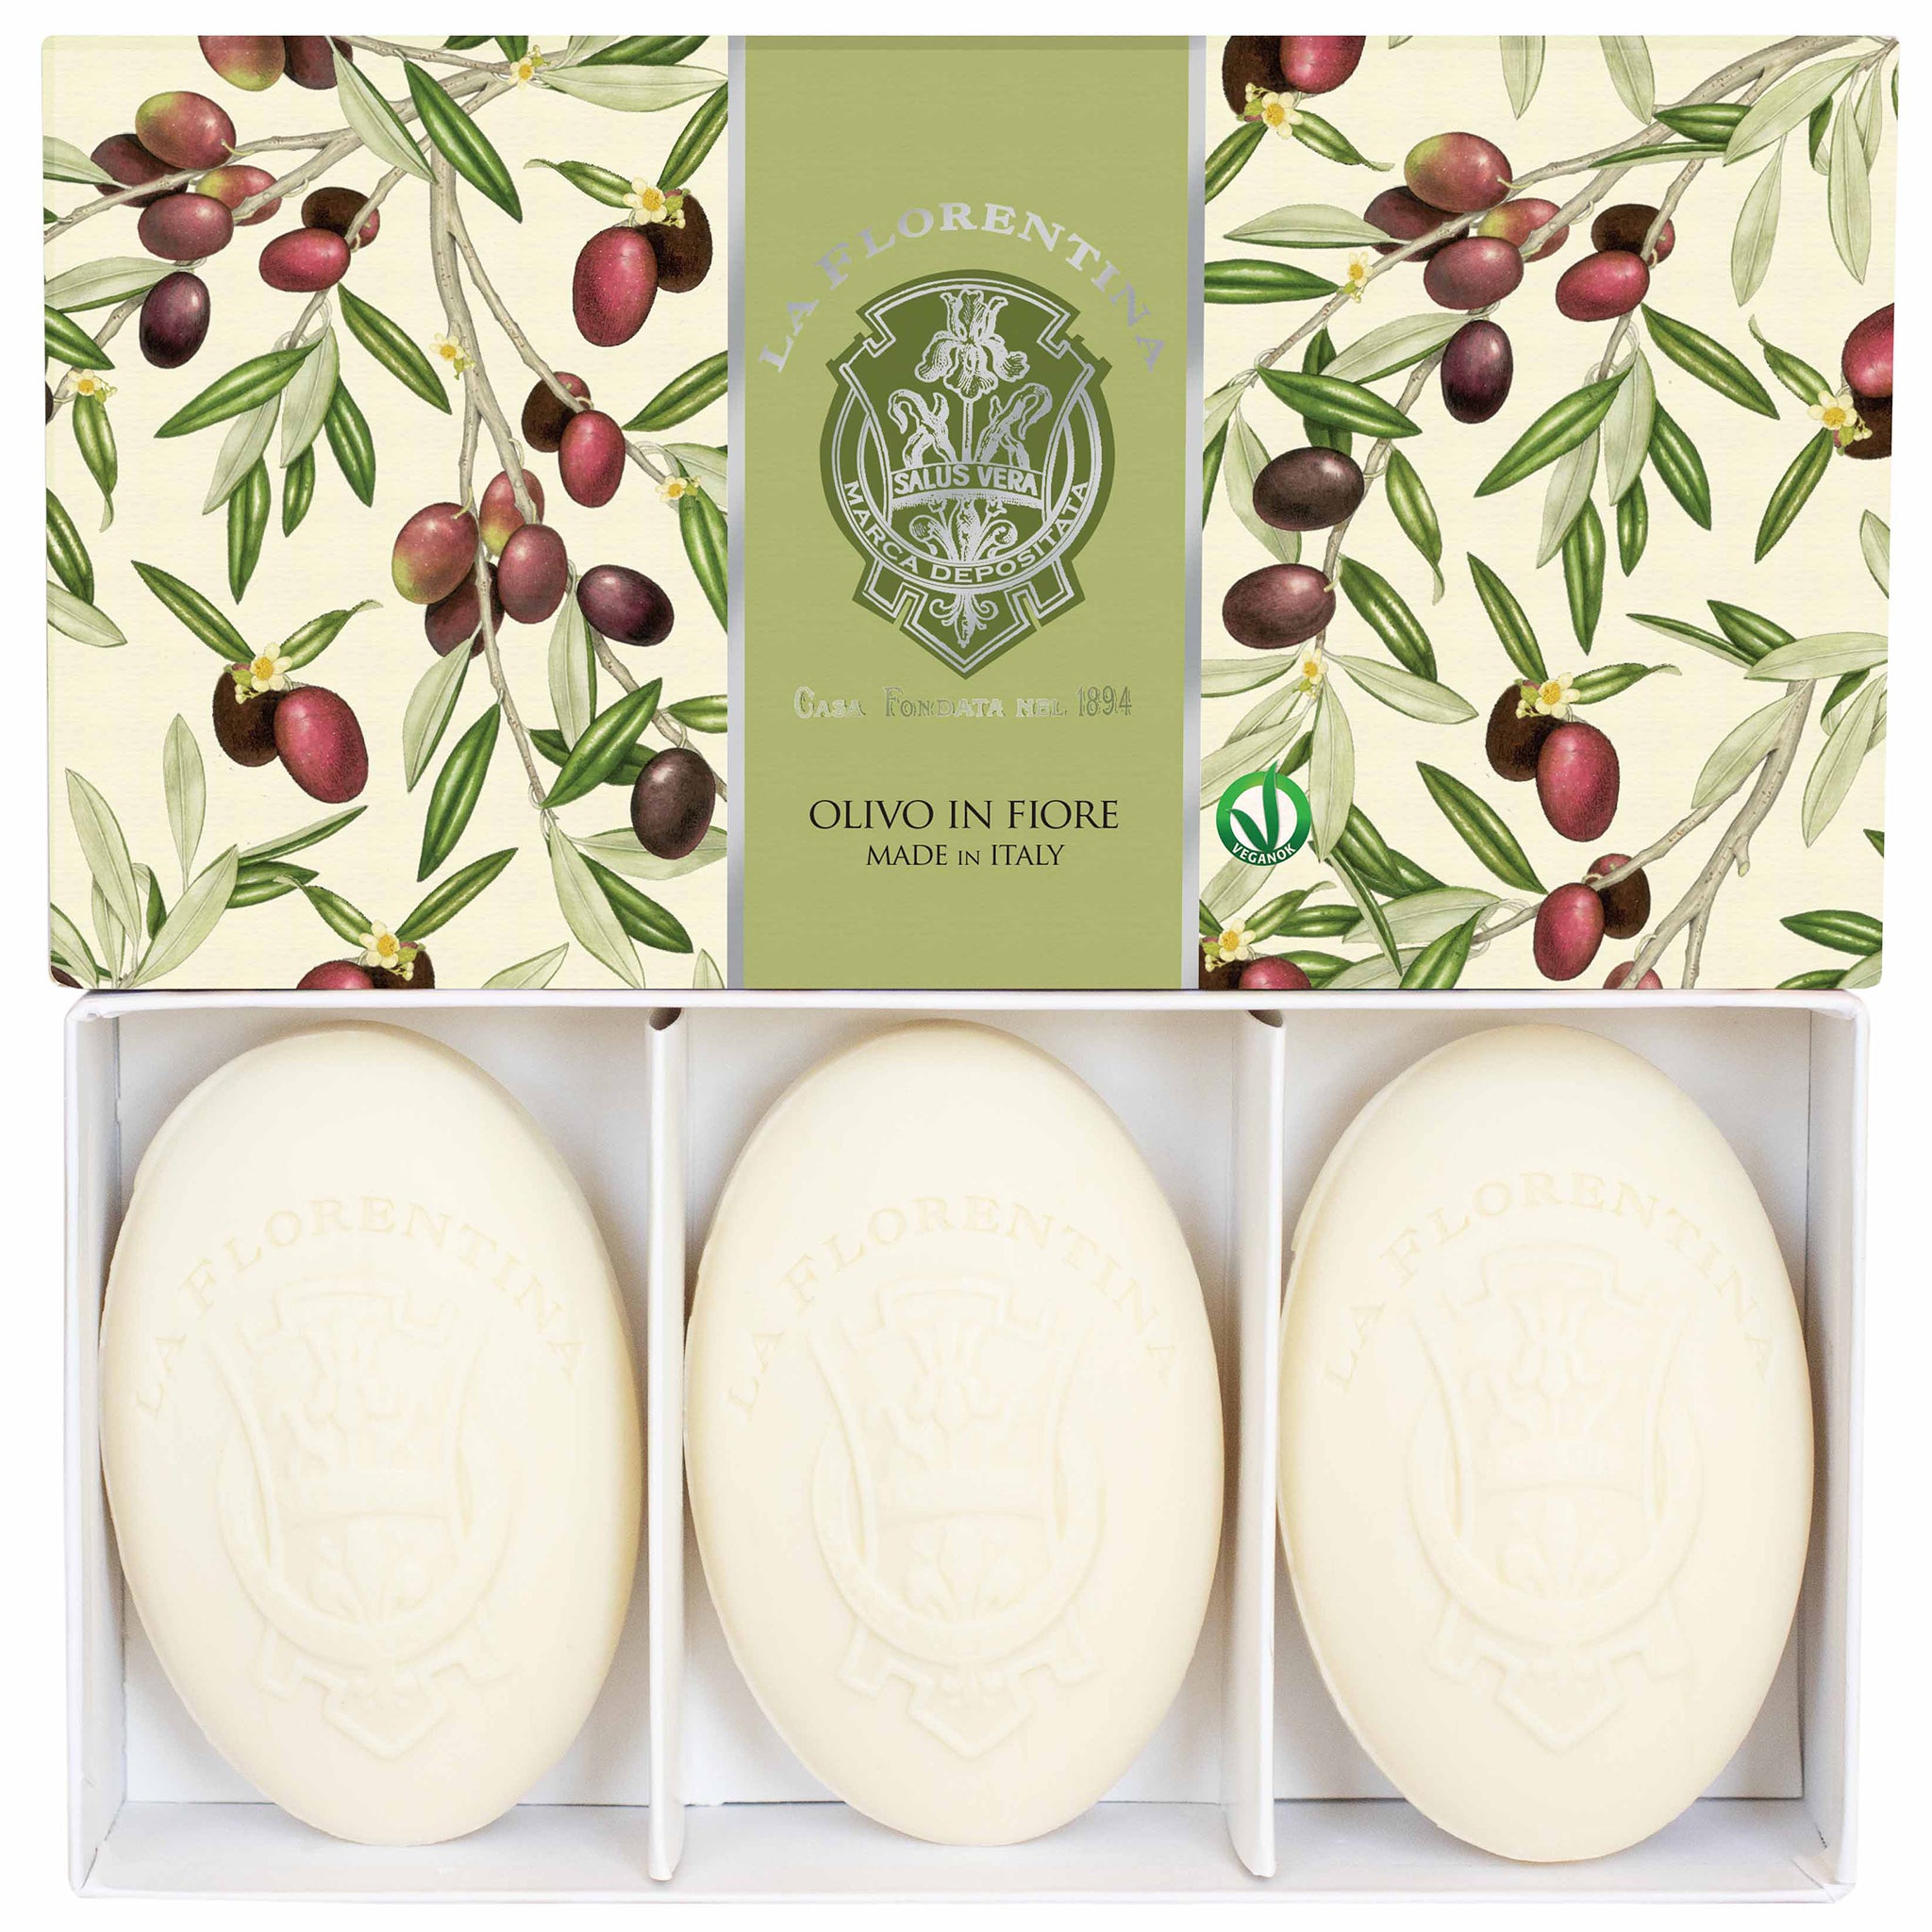 La Florentina Olive Flower 3 Bars Soap 150g Gift Boxed